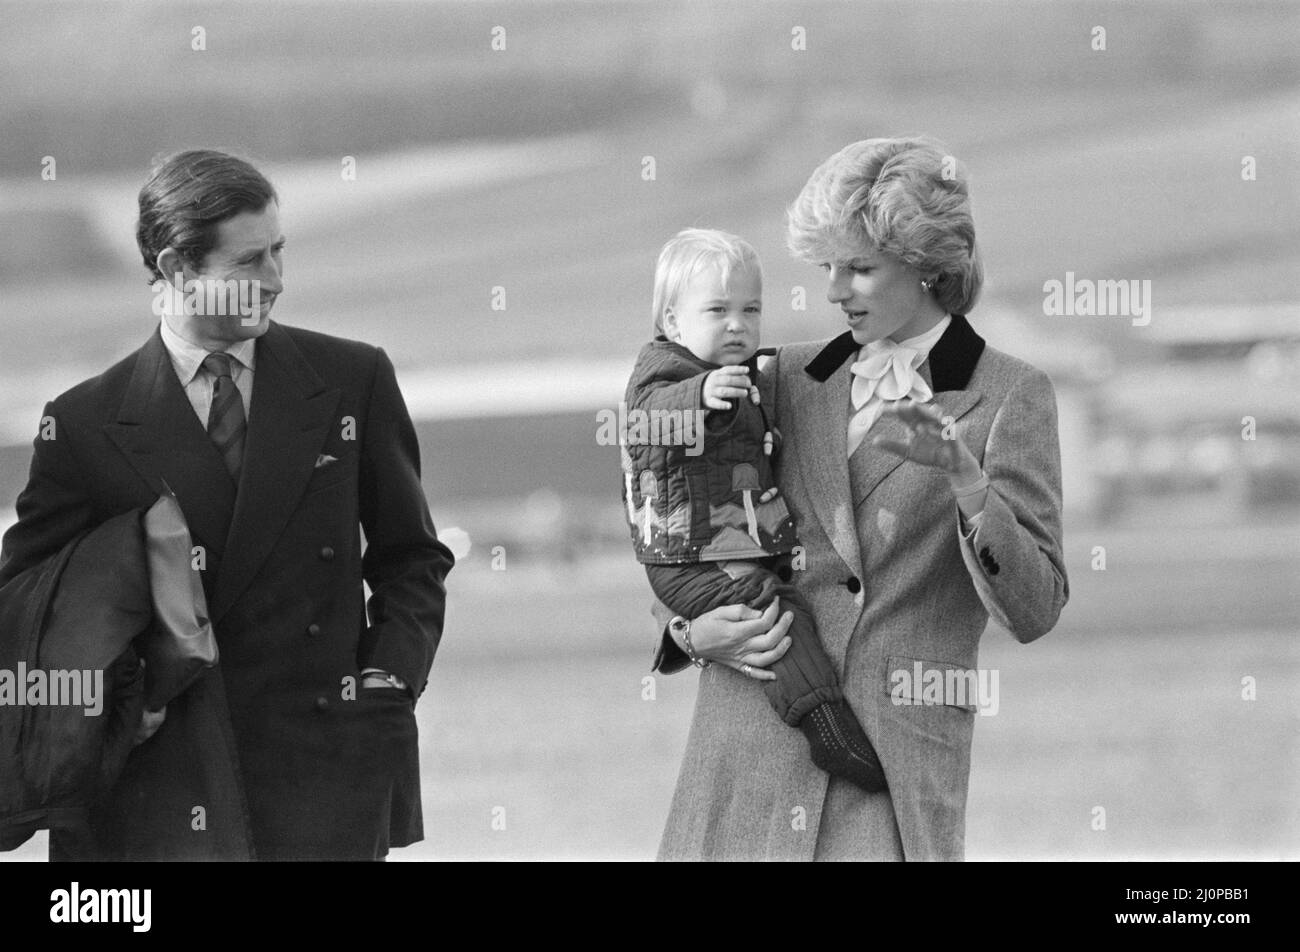 Ihre Königliche Hoheit Prinzessin Diana, die Prinzessin von Wales, hält ihren Sohn Prinz William fest, bevor sie am Flughafen Aberdeen, Schottland, in das königliche Flugzeug steigen. Bild 2 von 4 in dieser Sequenz von 4 Bildern bittet Prinzessin Diana Prinz William zu winken. Er versteht es nicht, also winkt er nicht. Und so winkt Prinzessin Diana, und bald winkt Prinz William mit ihr. Kopiert seine Mutter. Dies ist möglicherweise eine frühe, sogar erste, königliche Welle von einem damals 16. Monate alten Prinz William. Bild aufgenommen am 24.. Oktober 1983 Stockfoto